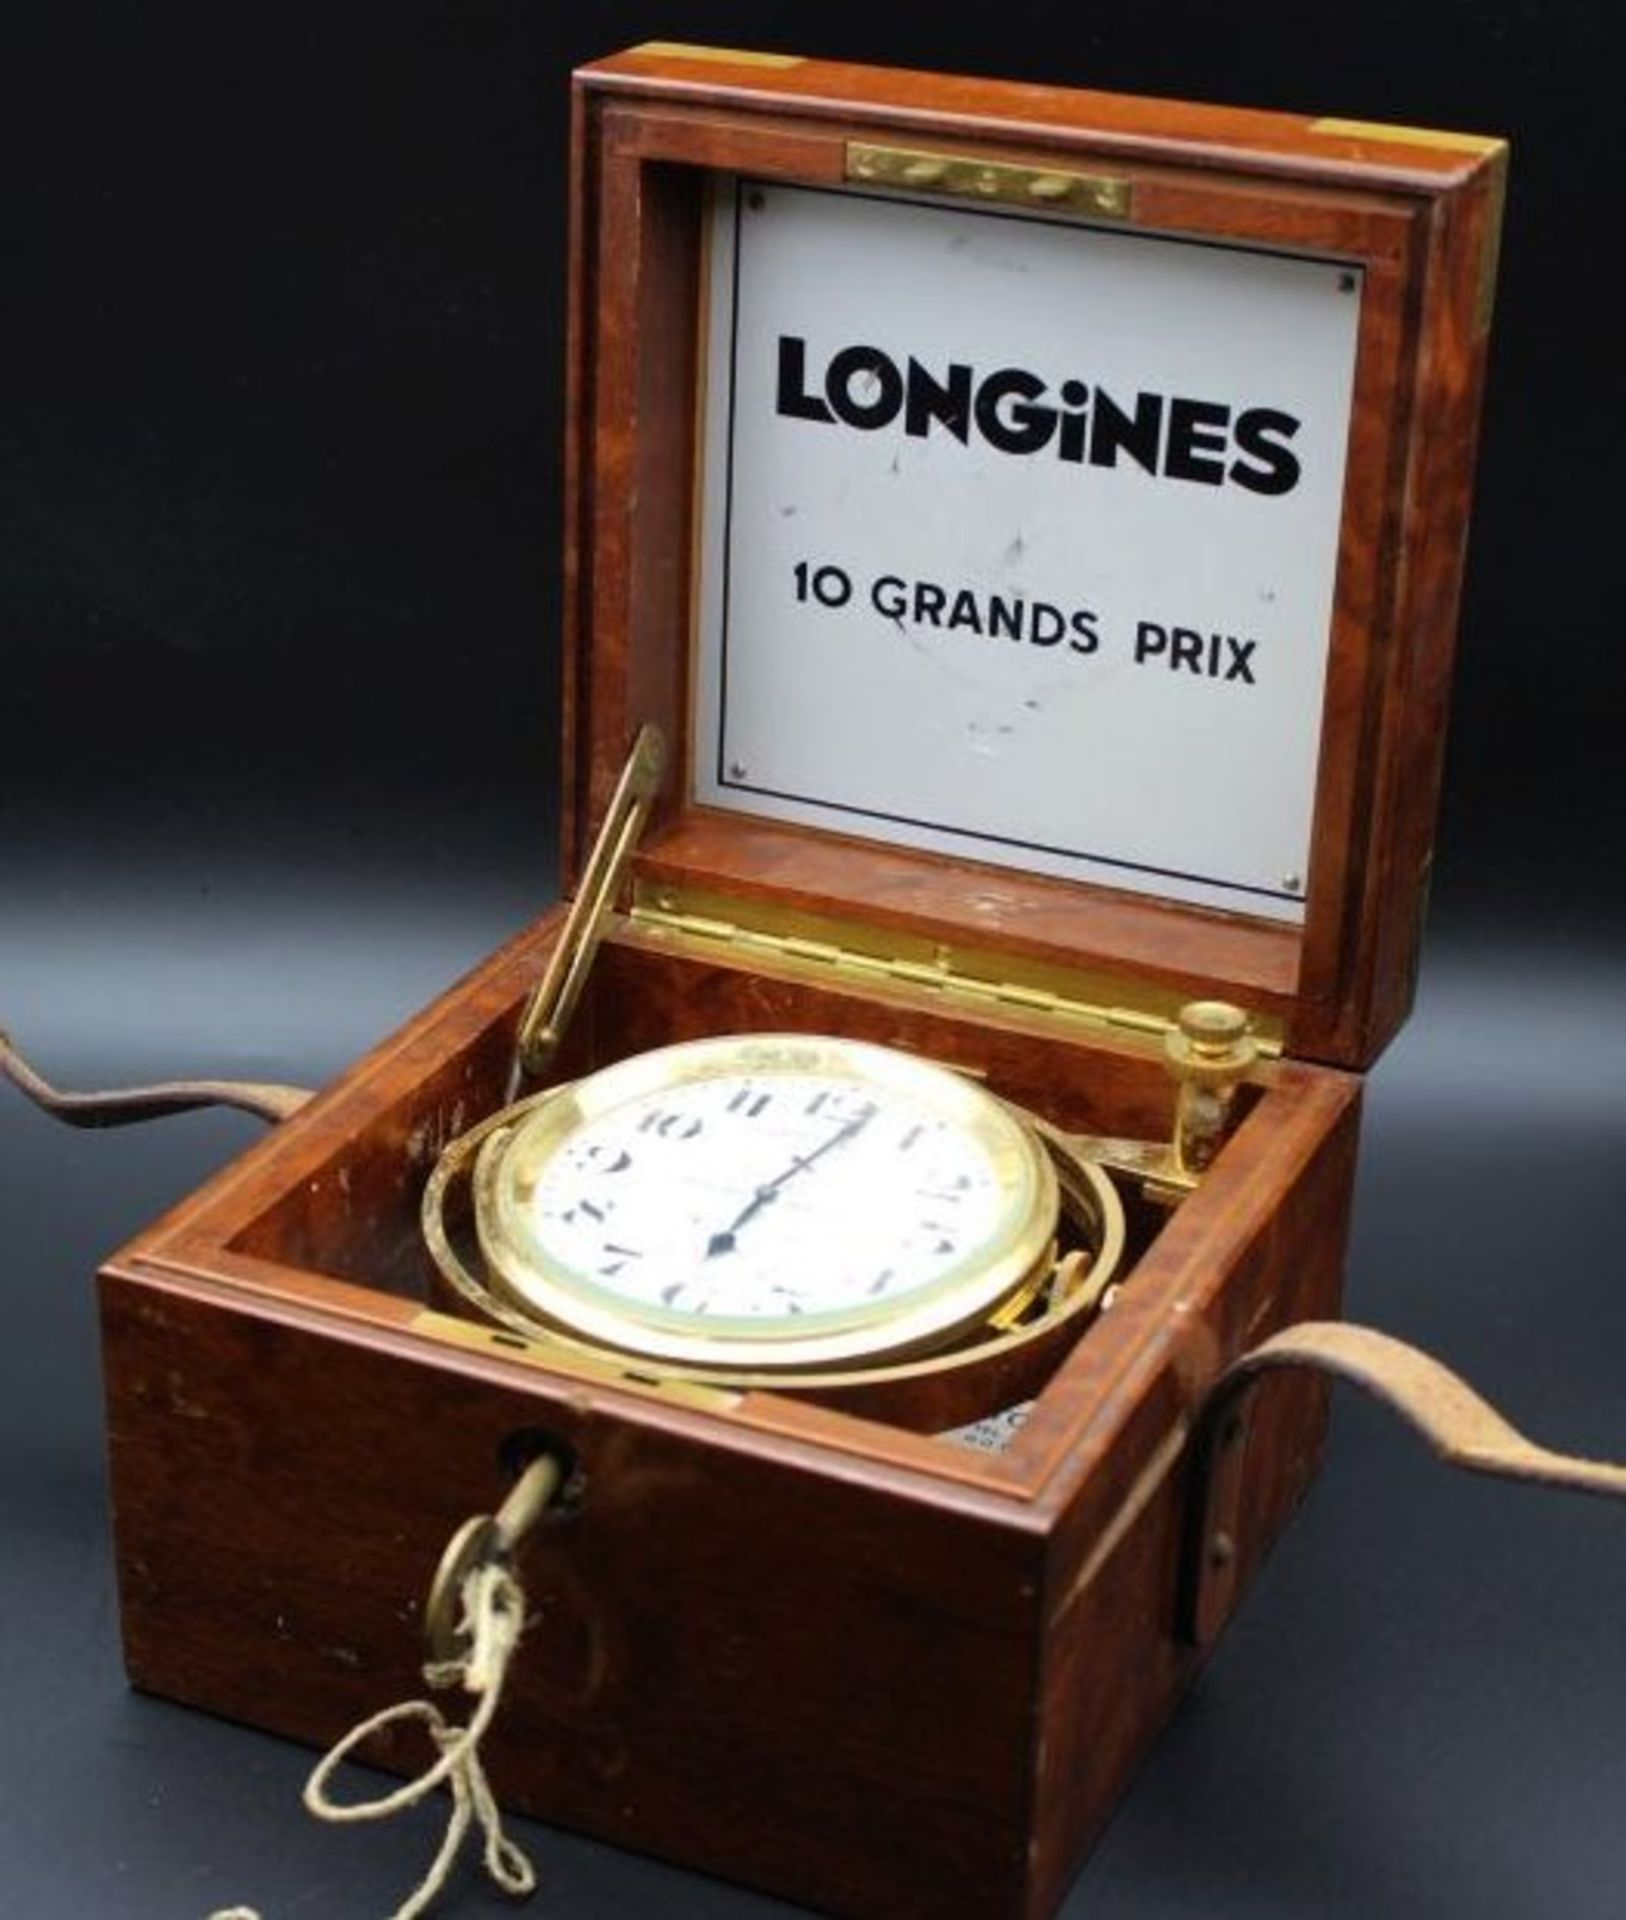 LONGINES Schiffschronometer, in Mahagoniekasten, Werk steht, Kasten H-11cm B-15cm T-15cm, Uhr D-